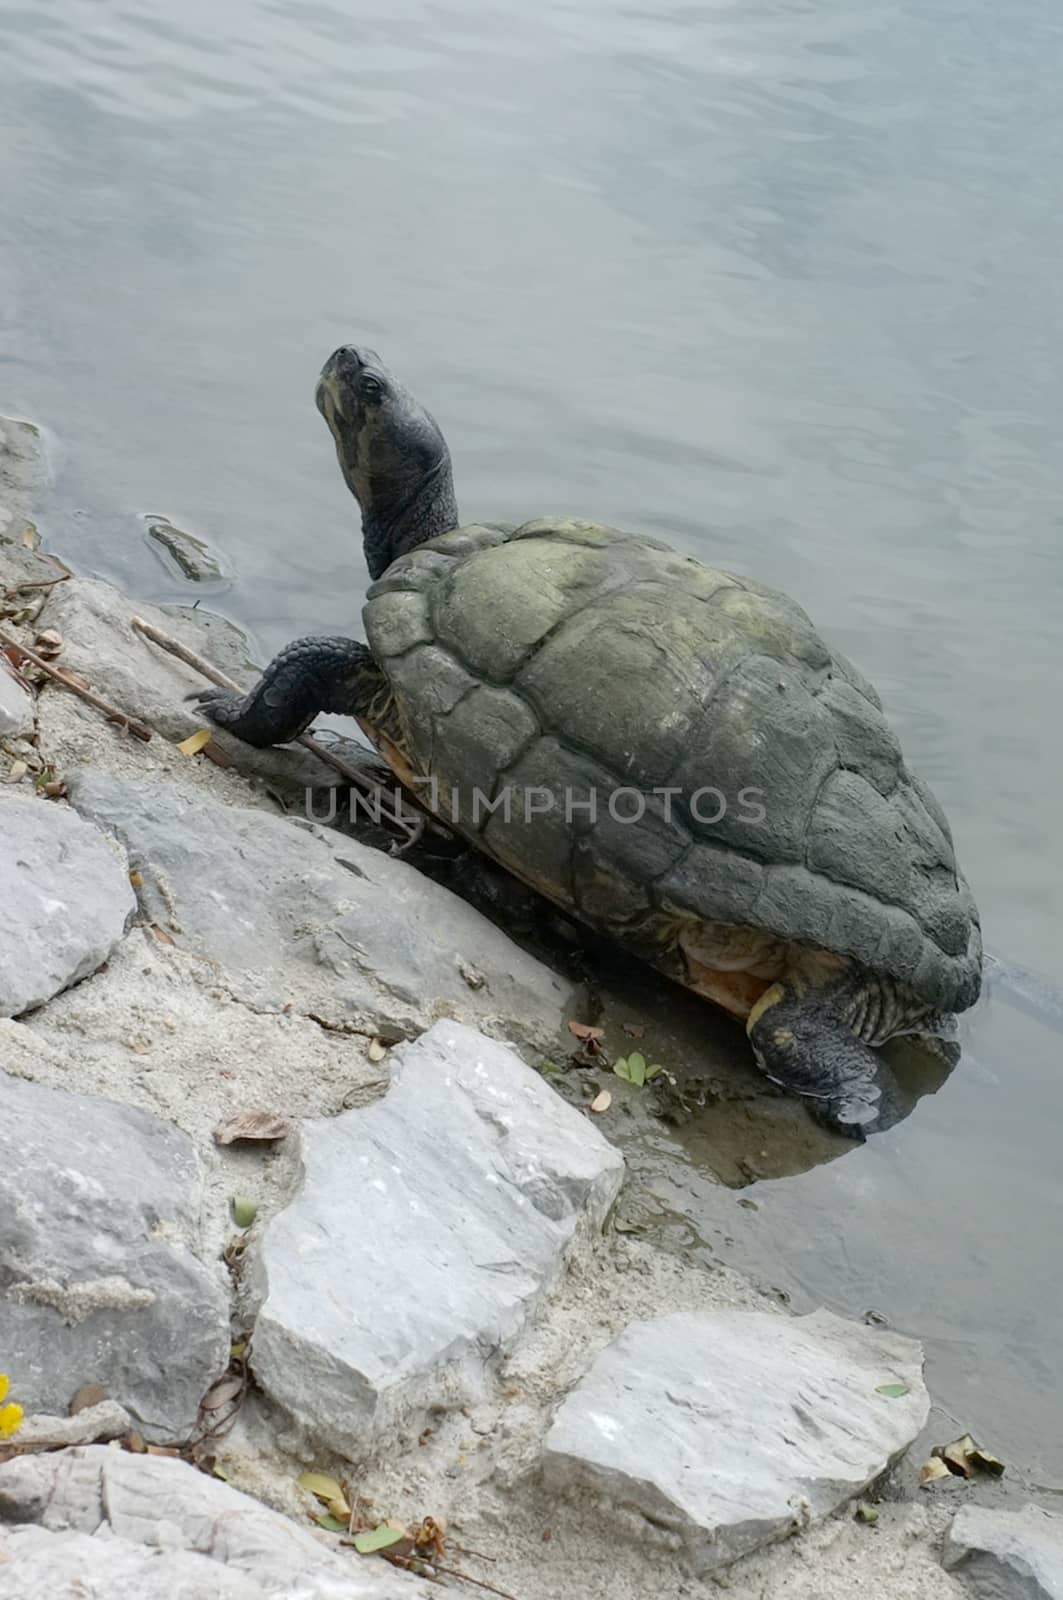 Turtle walking on the rock